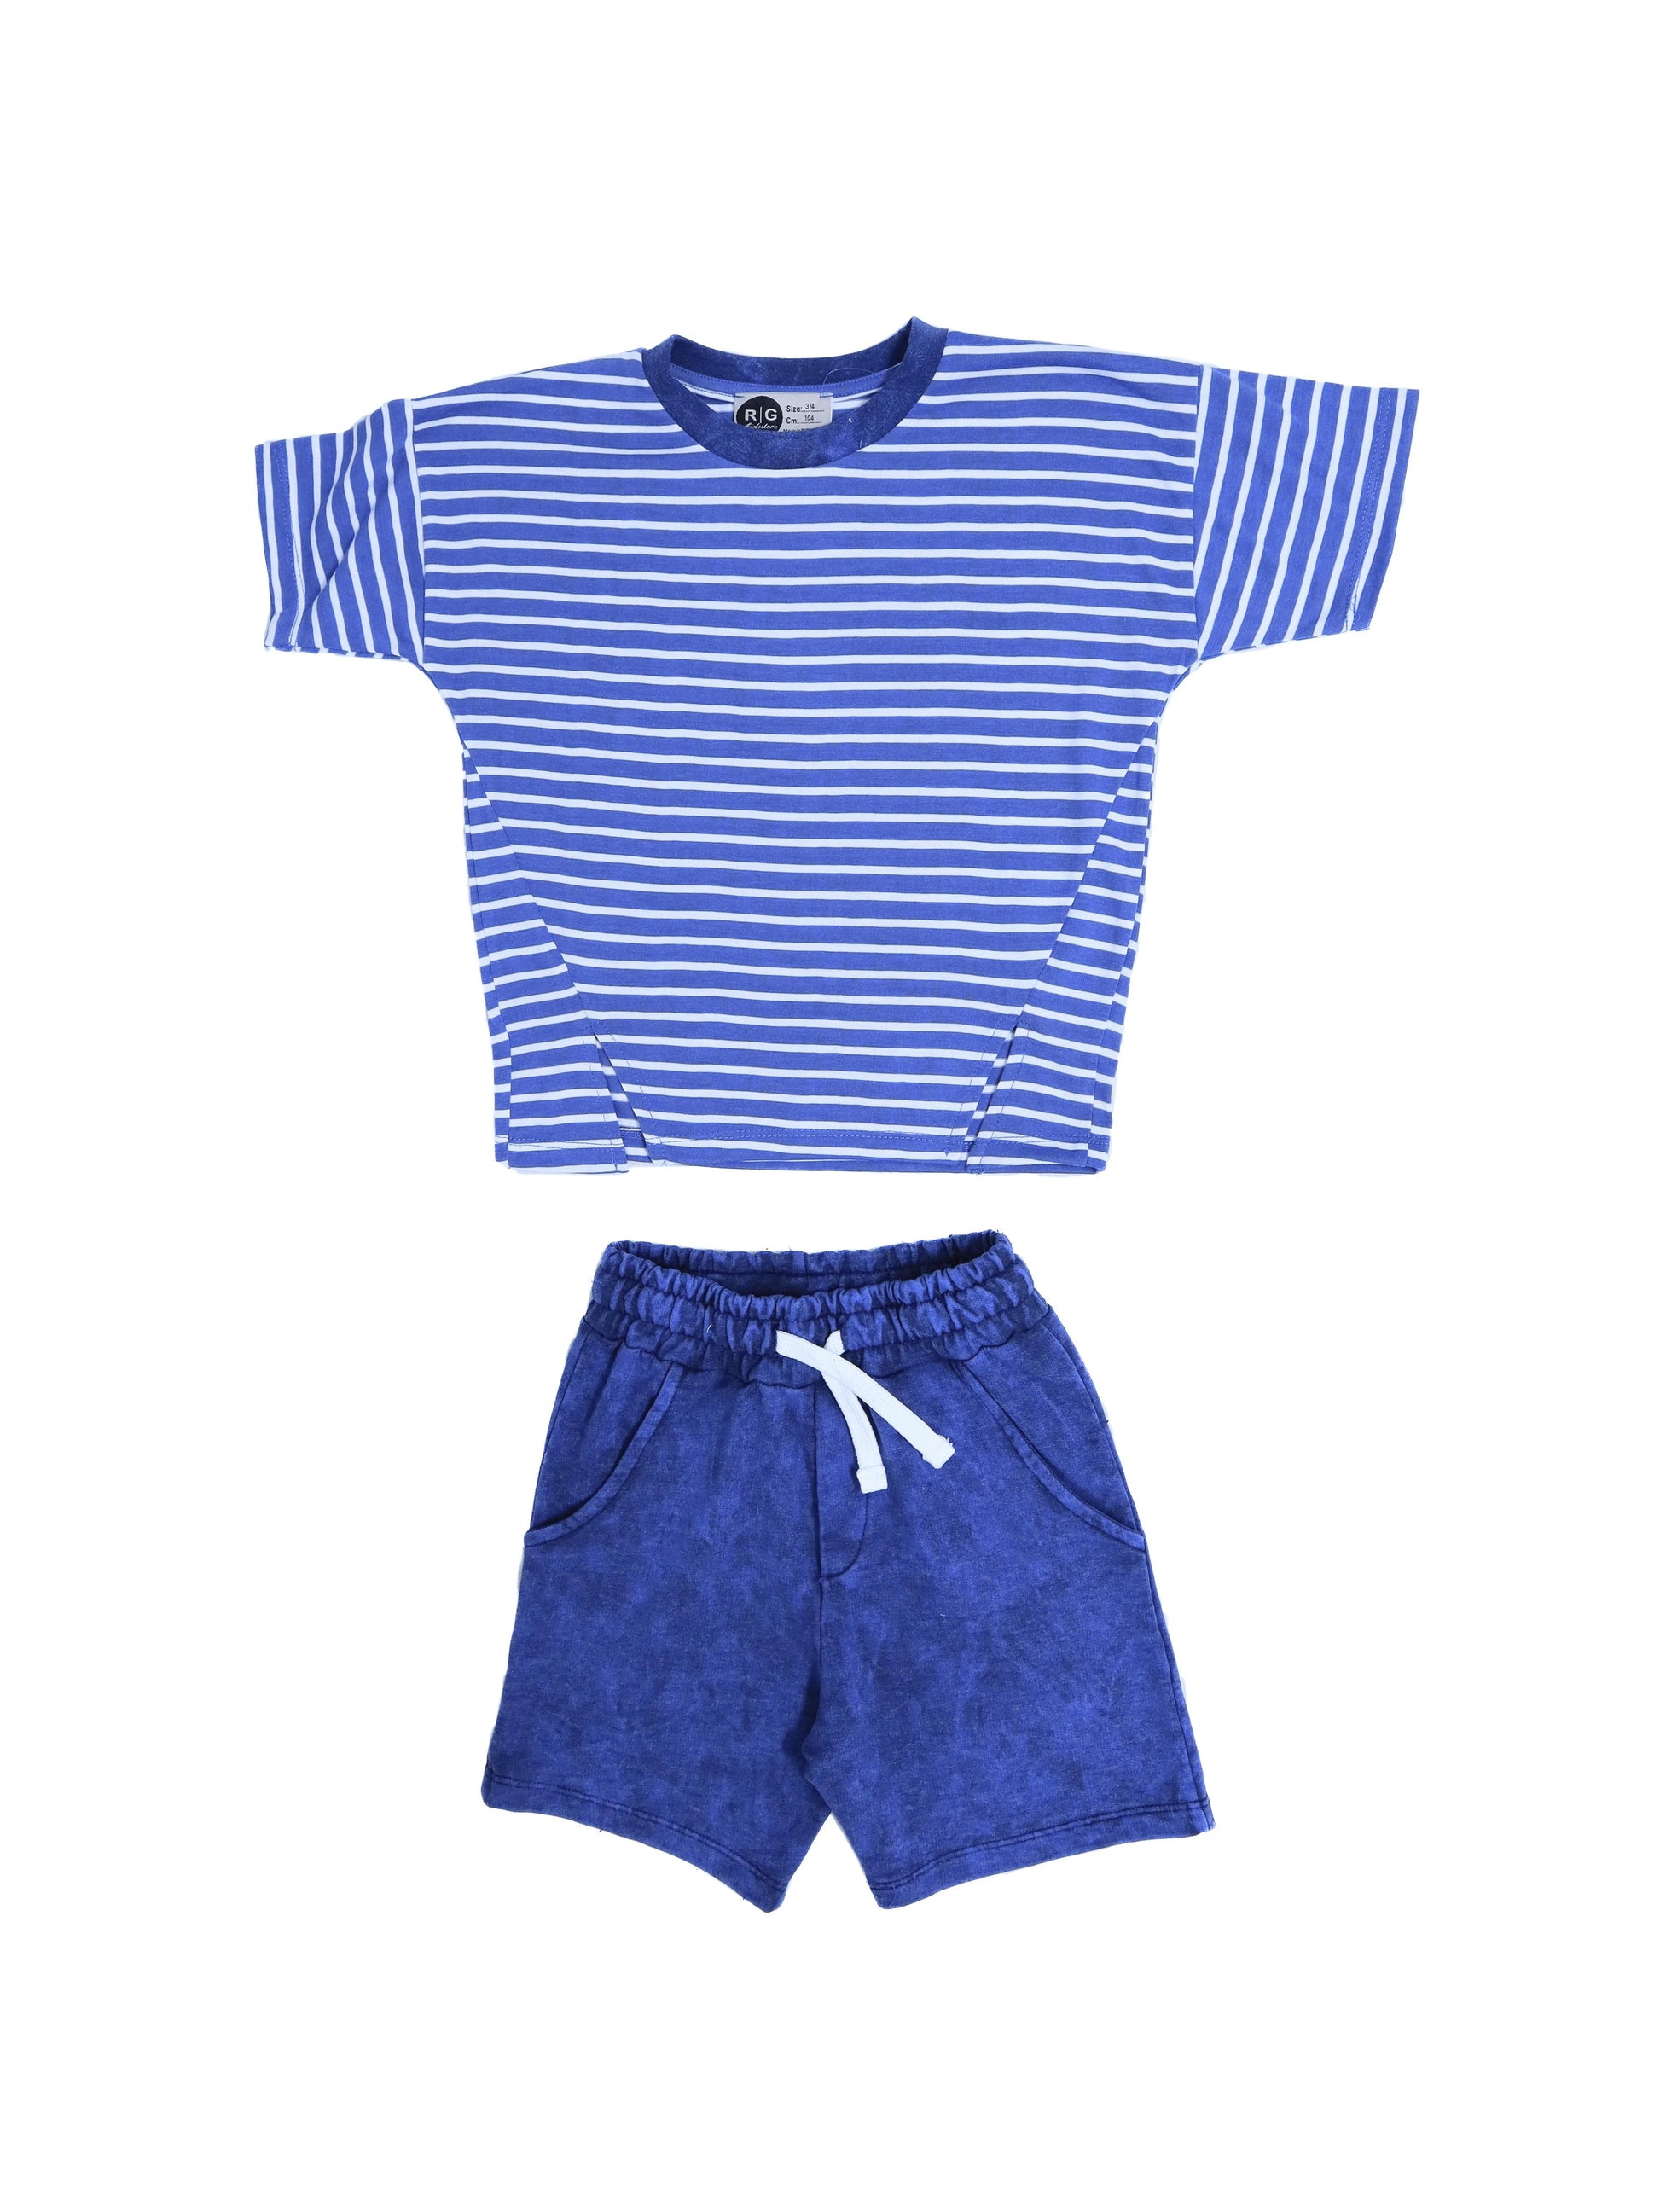 Children's Unisex Washable T-Shirt-Shorts Set of 2